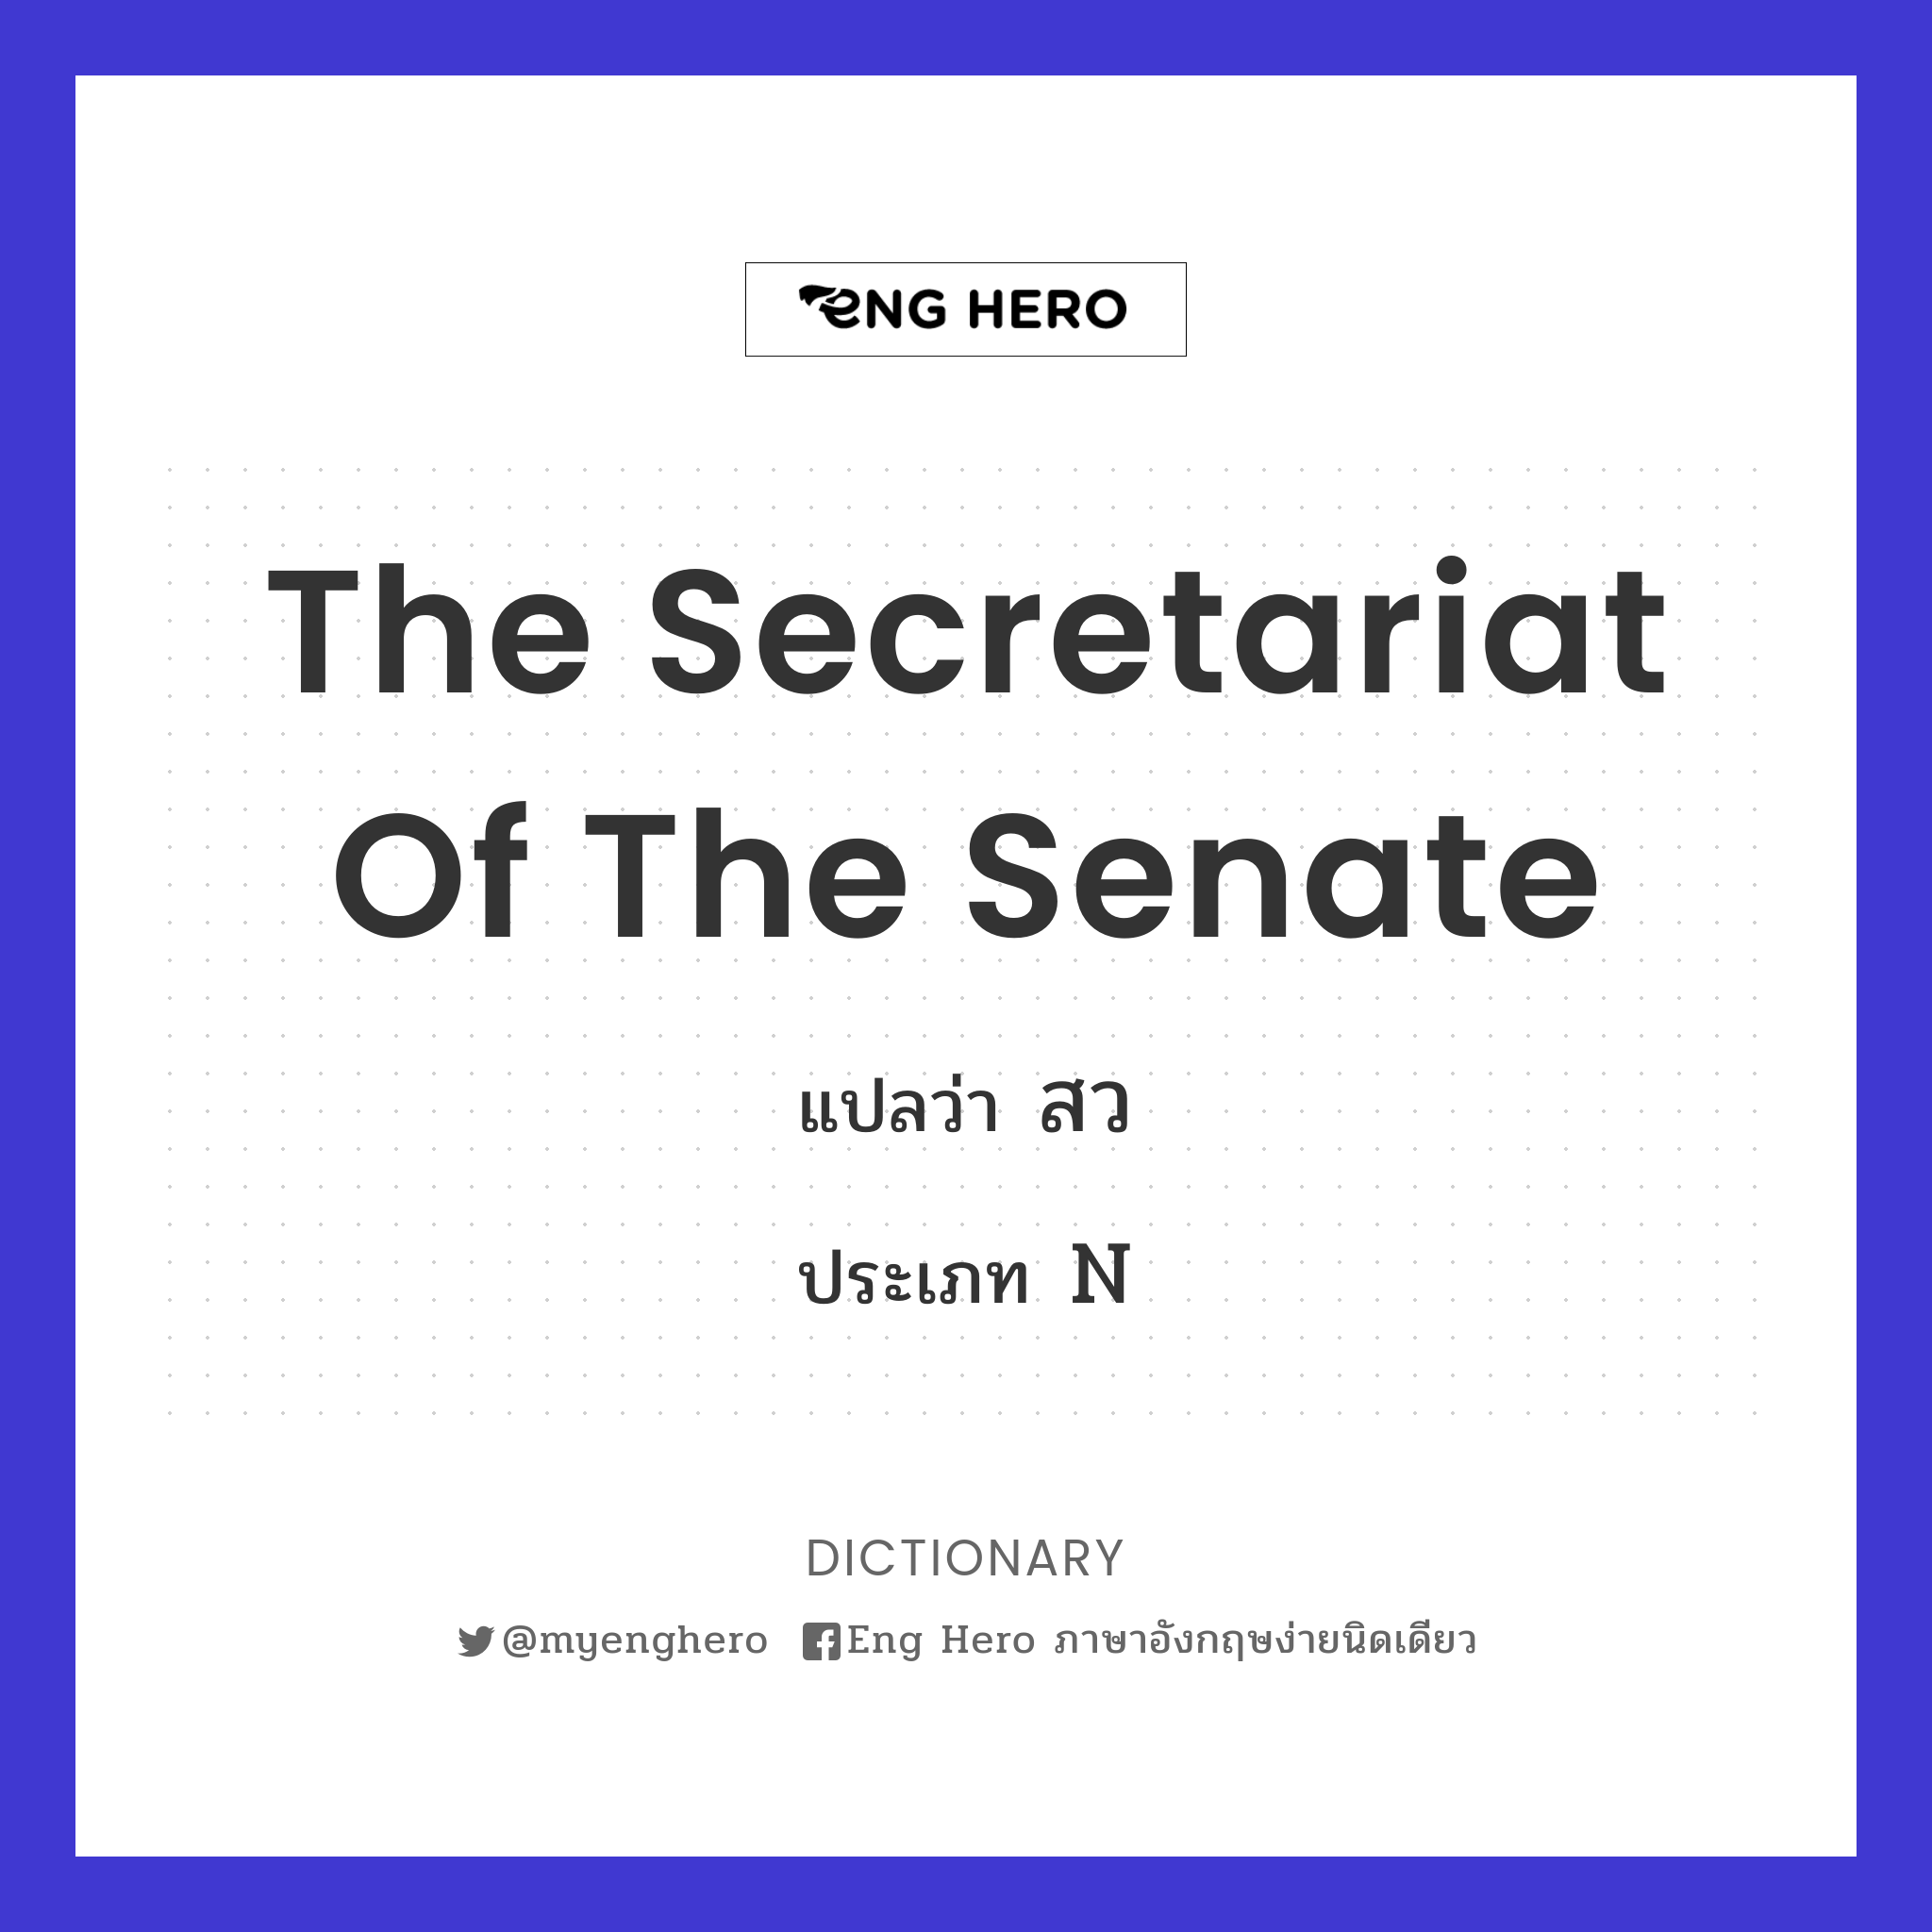 The Secretariat of the Senate